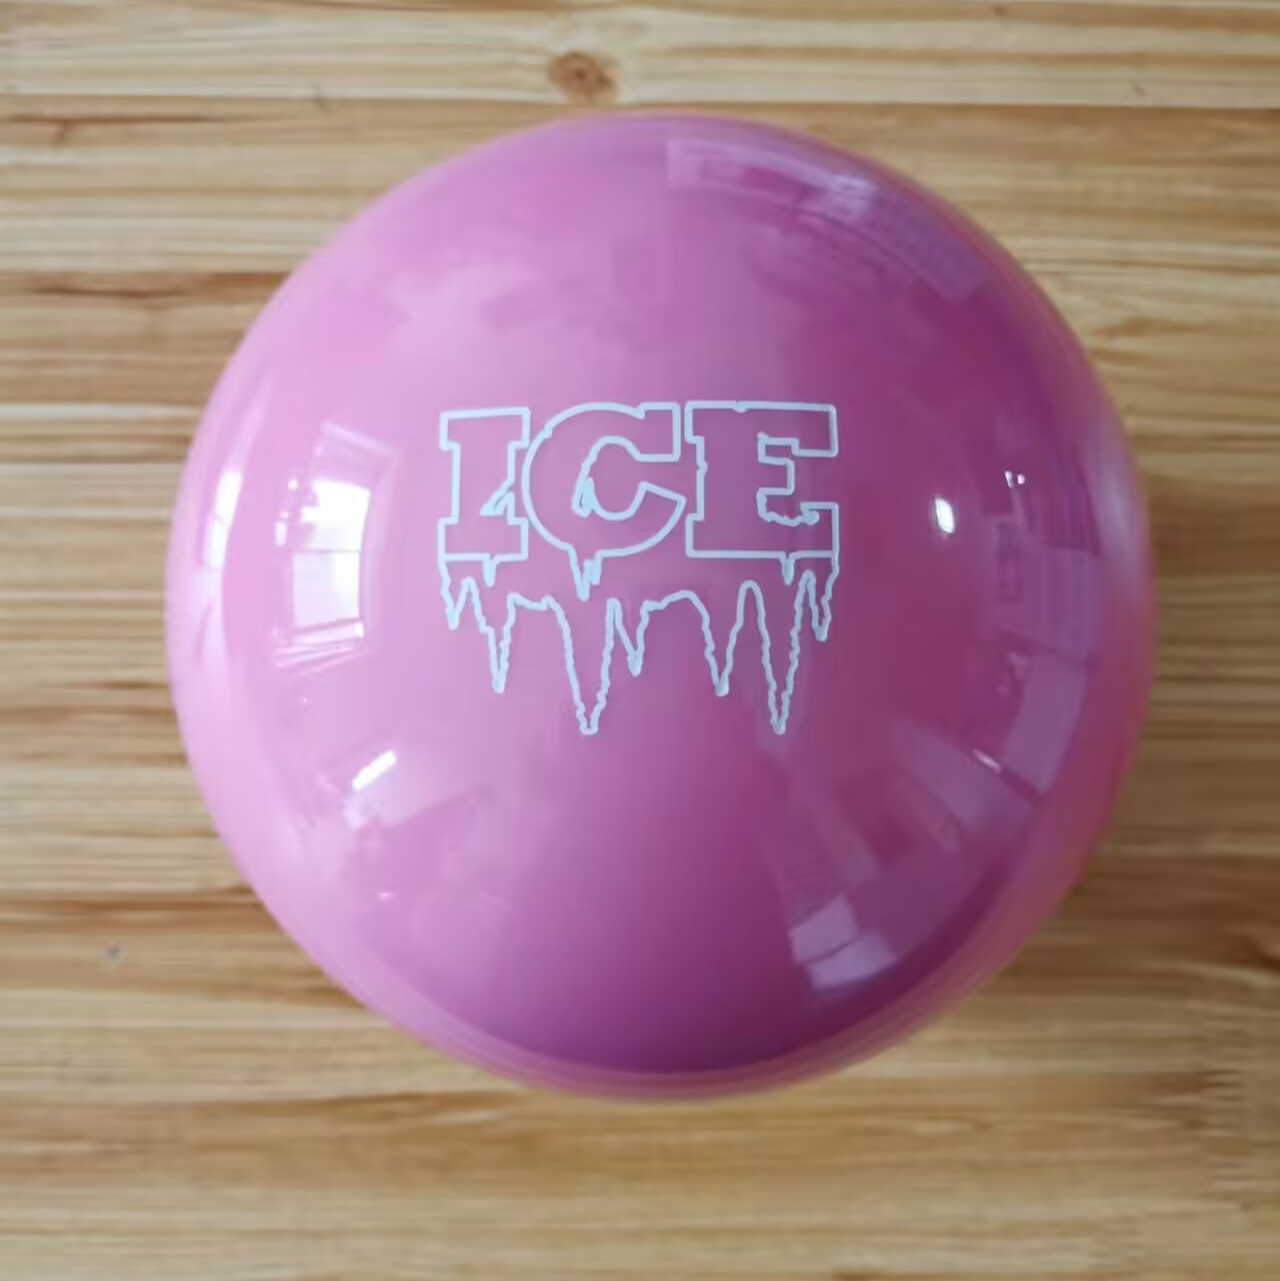 风暴官网在线款 STORM直线打法专业保龄球 ICE™紫冰和粉冰-图1